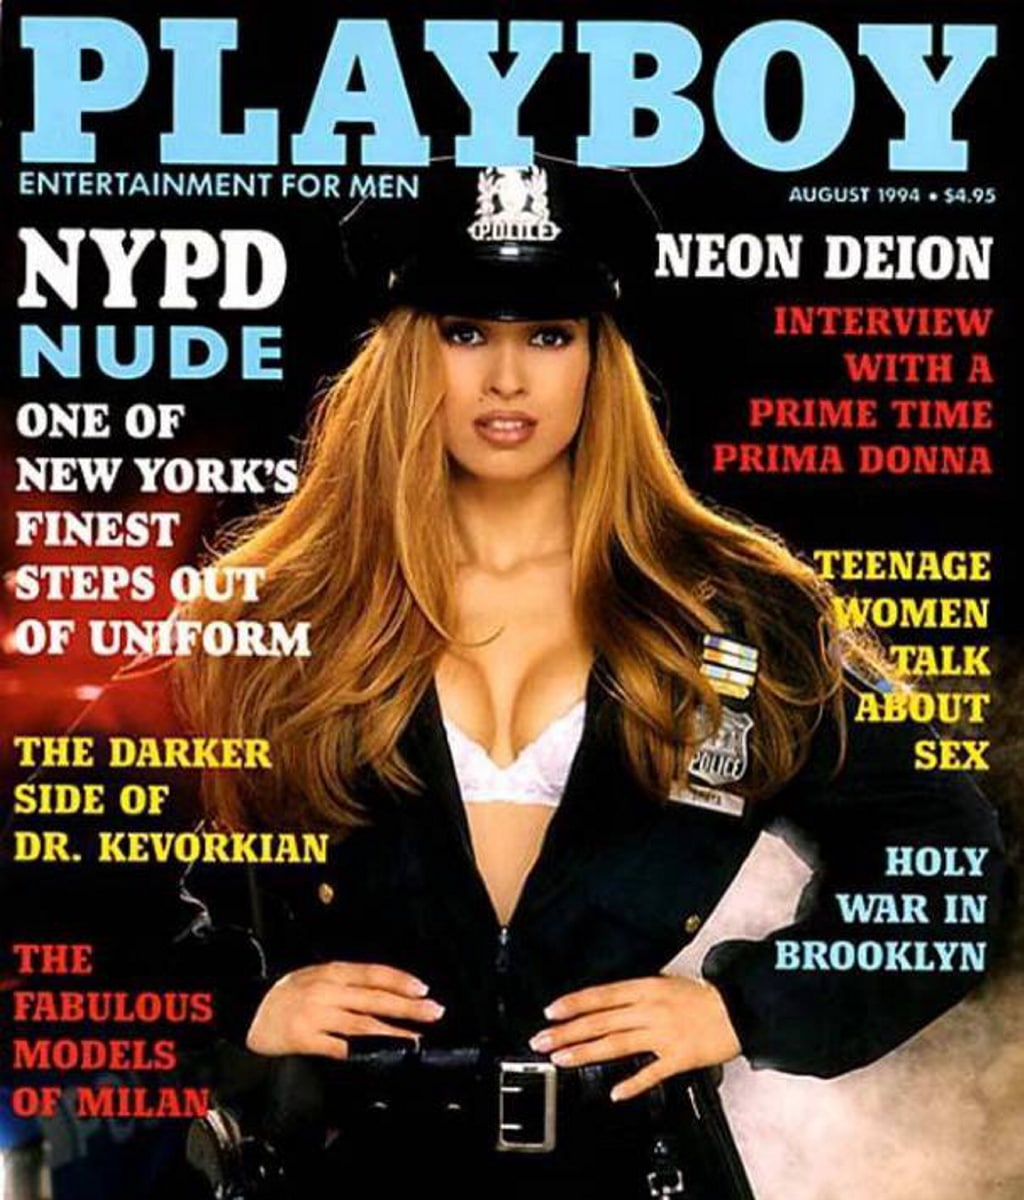 Playboy volverá a publicar desnudos